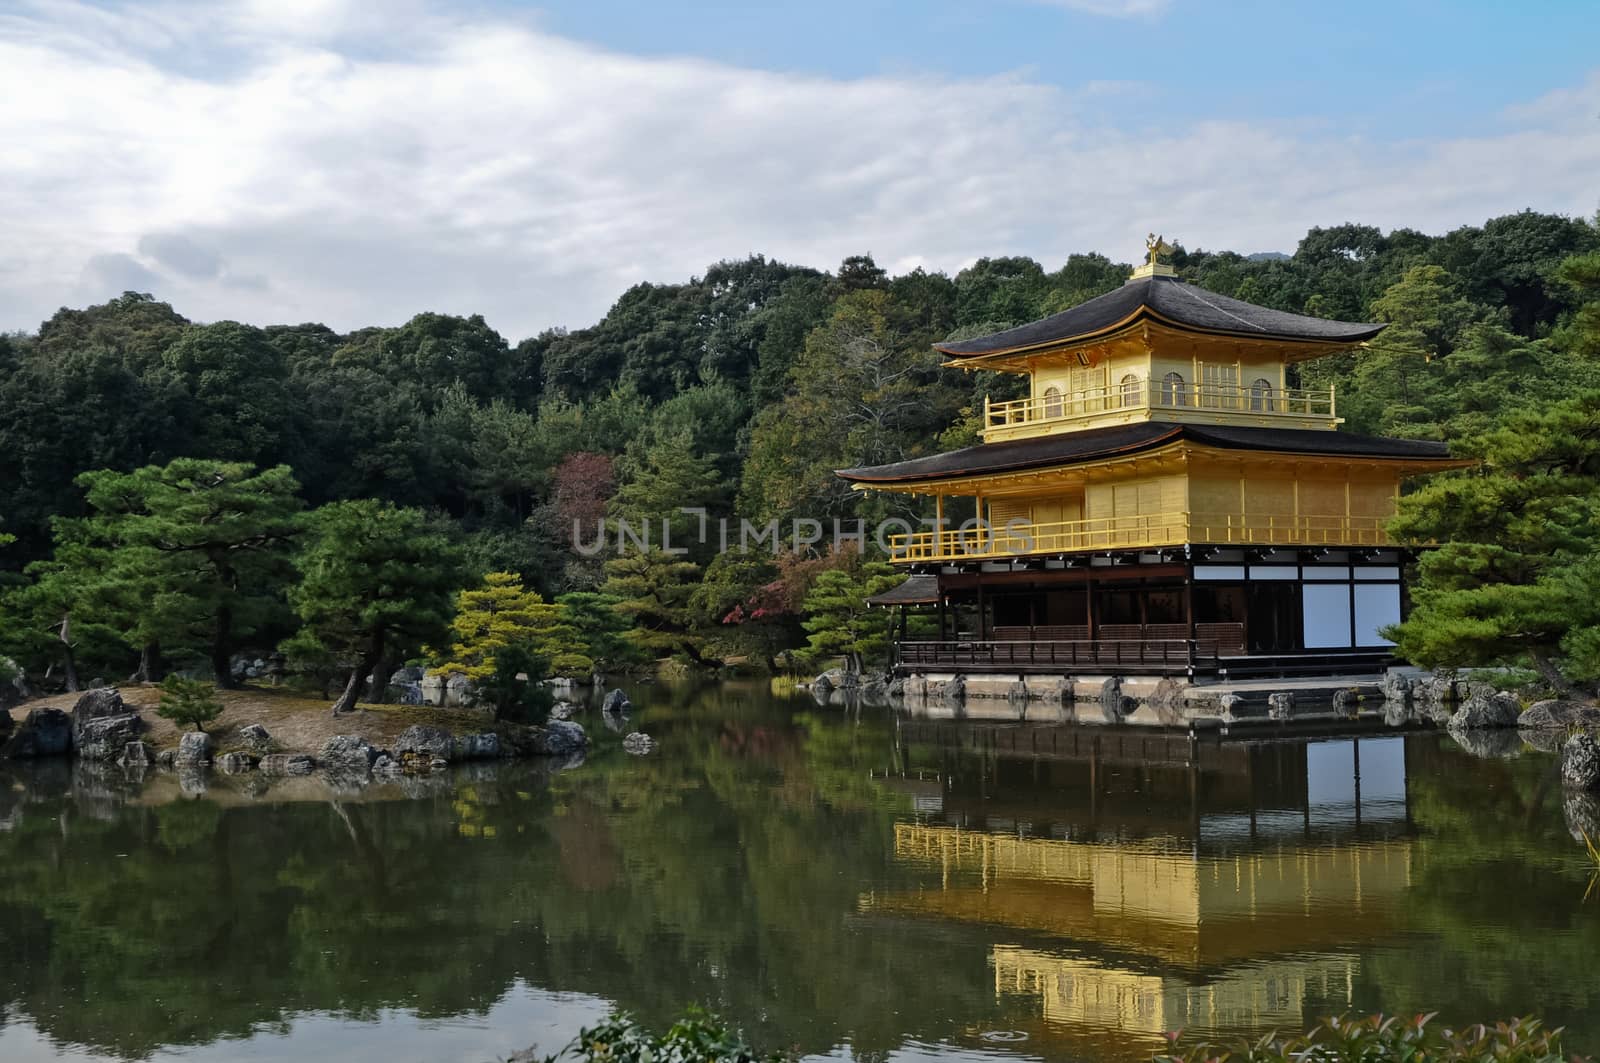 Japanese golden pavillion Kinkakuji in Autumn Kyoto Japan by eyeofpaul